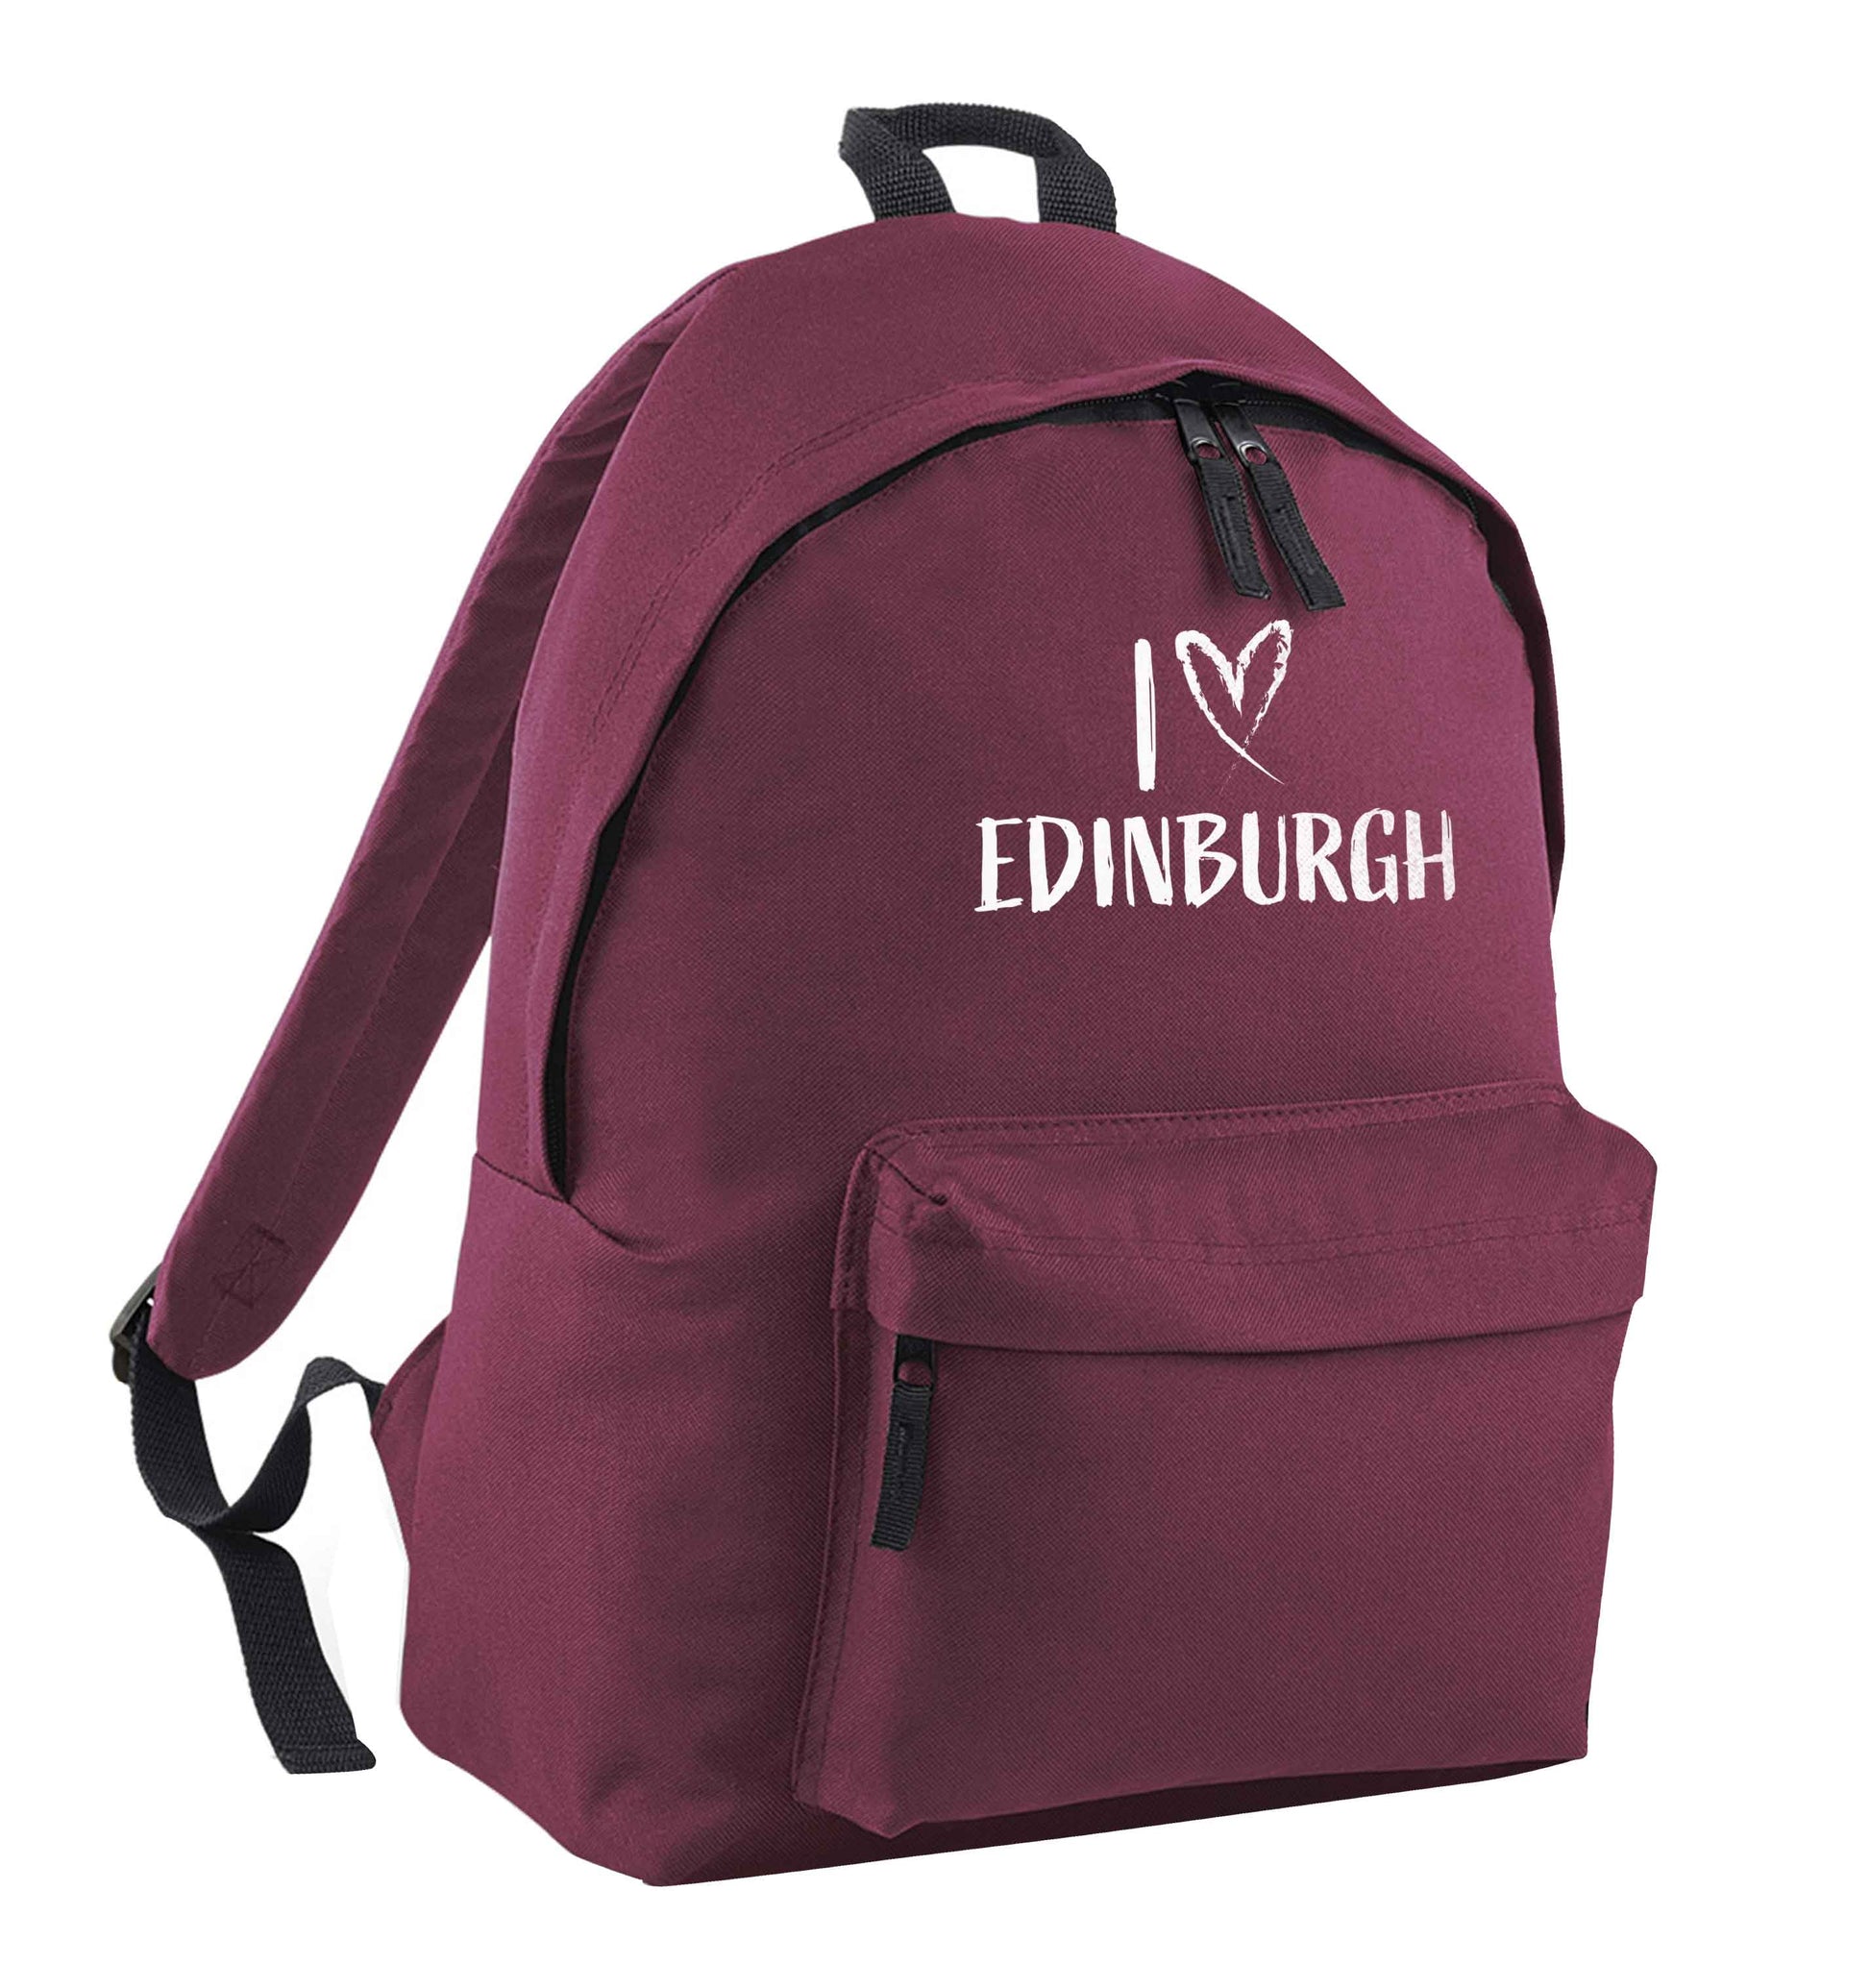 I love Edinburgh maroon adults backpack